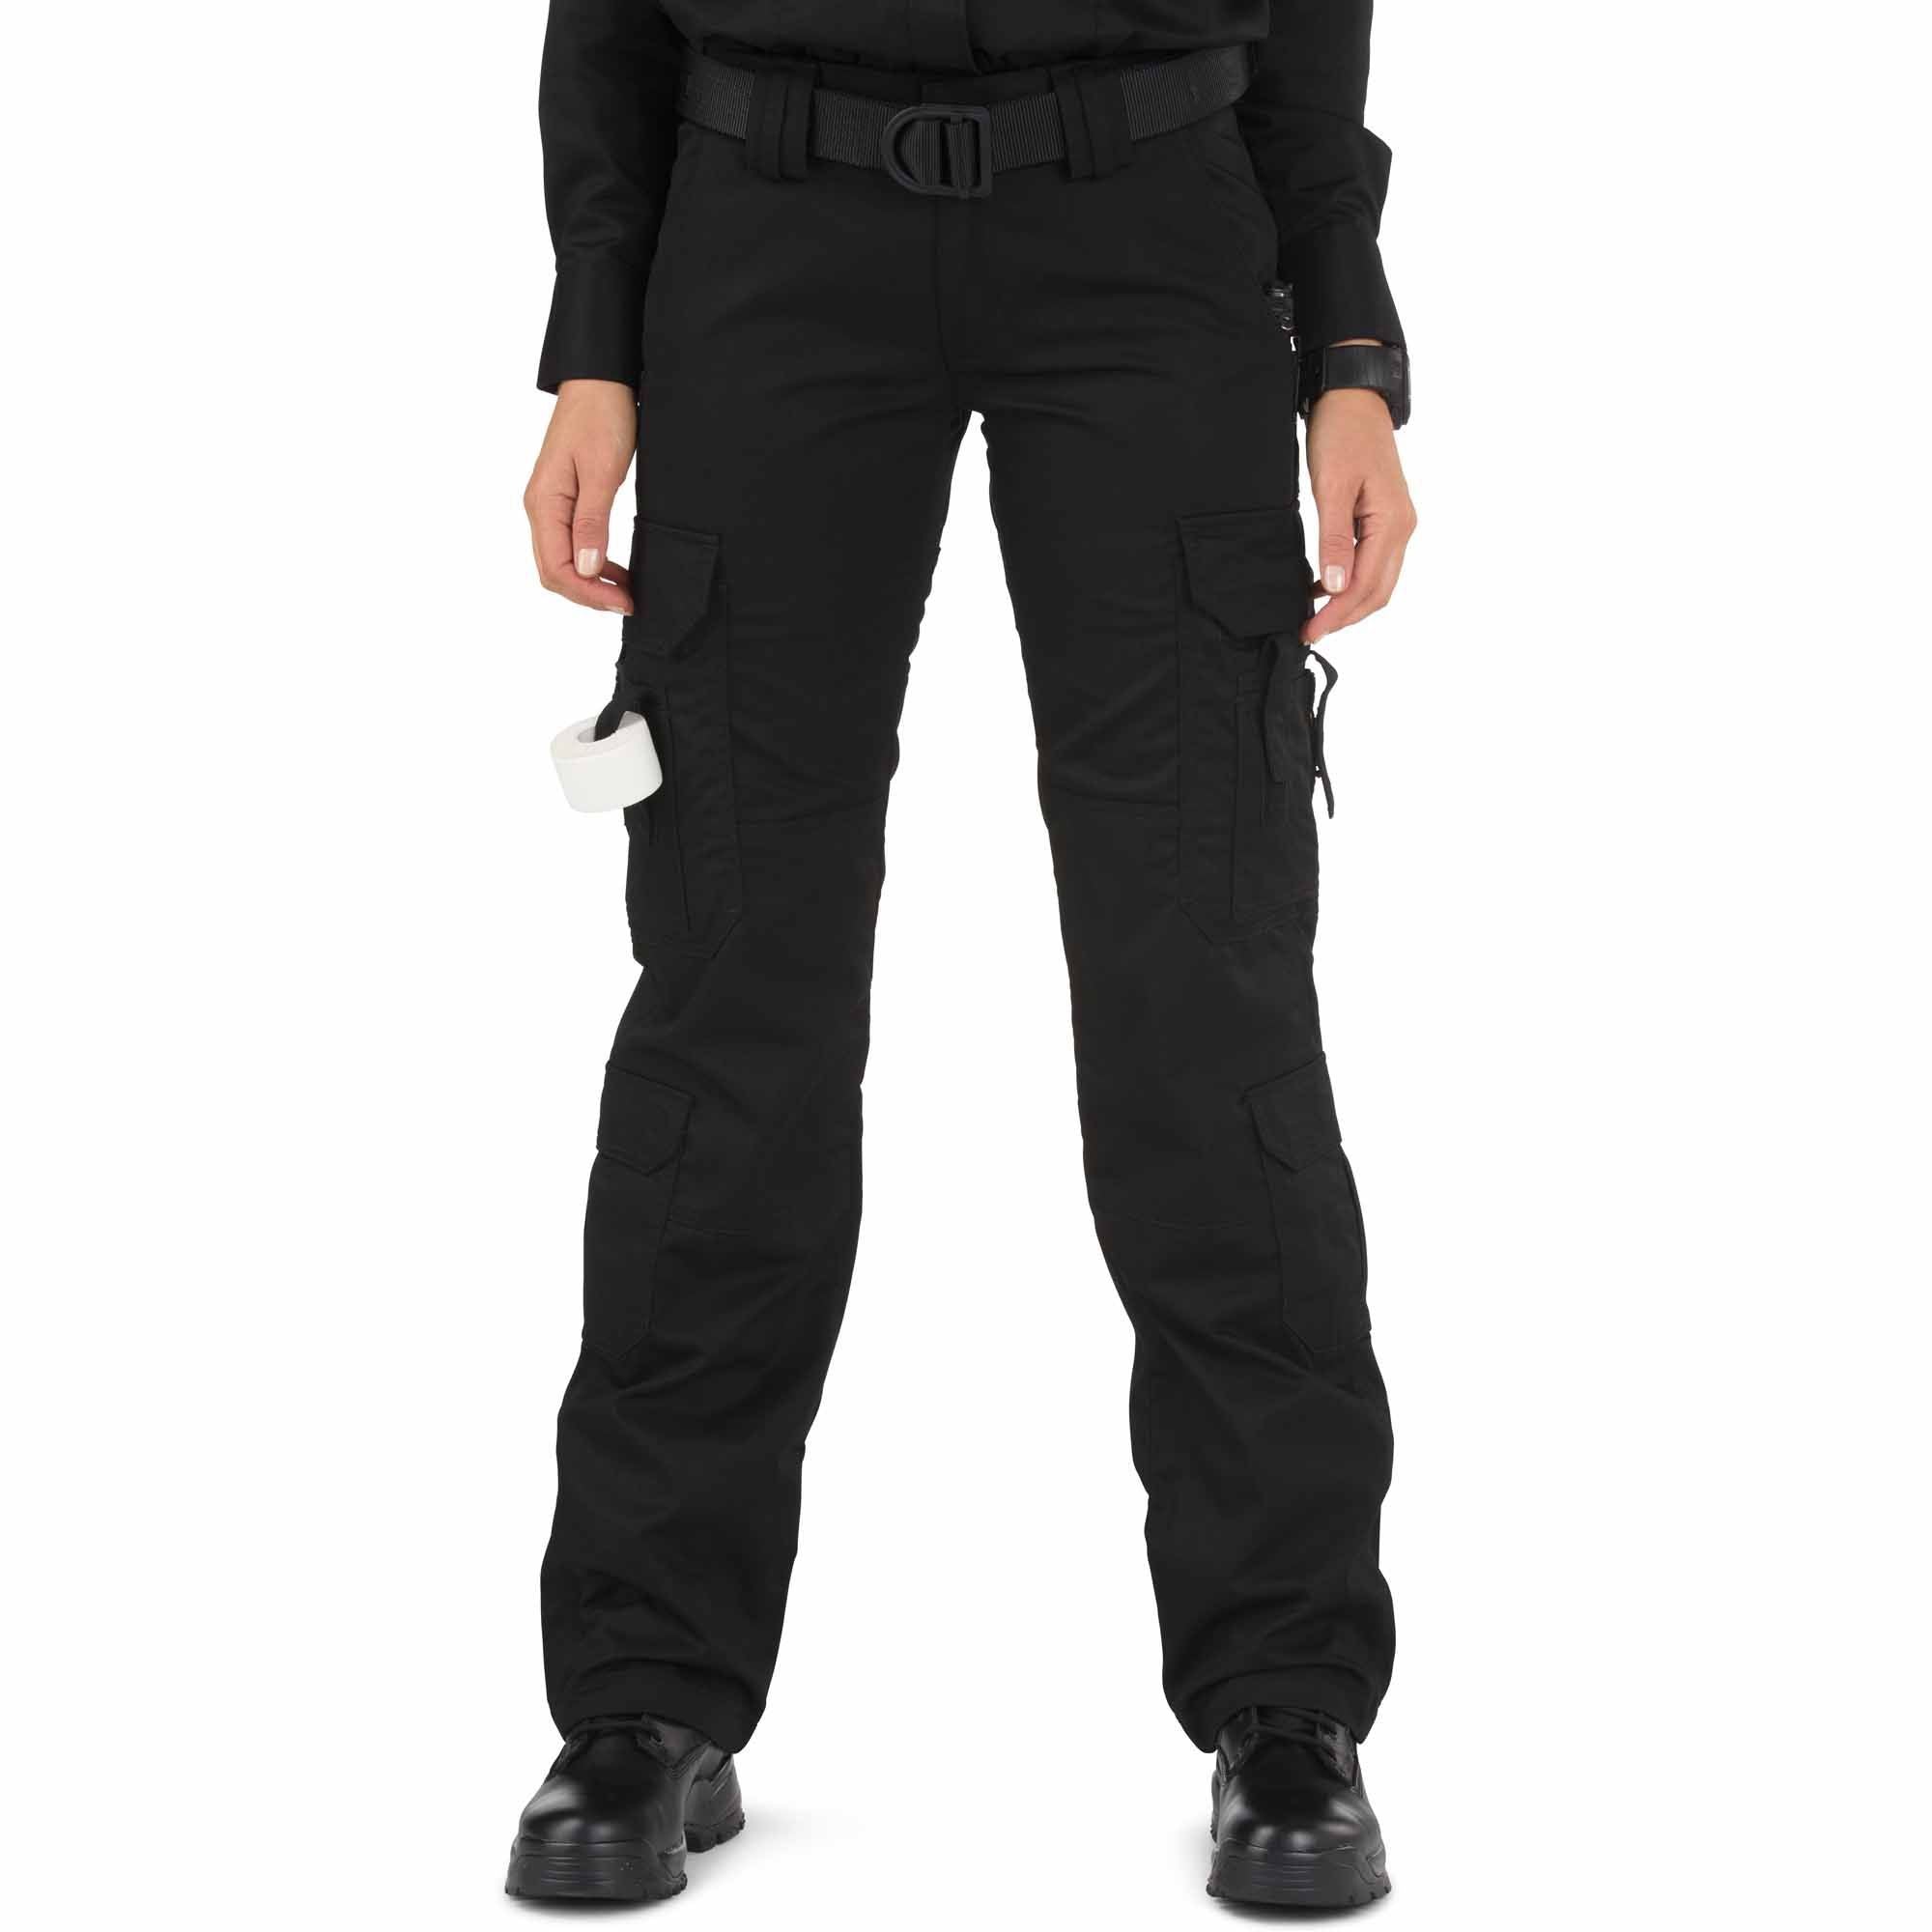 5.11 Women's TACLITE EMS Pant Black Pants 5.11 Tactical 2 Regular Tactical Gear Supplier Tactical Distributors Australia